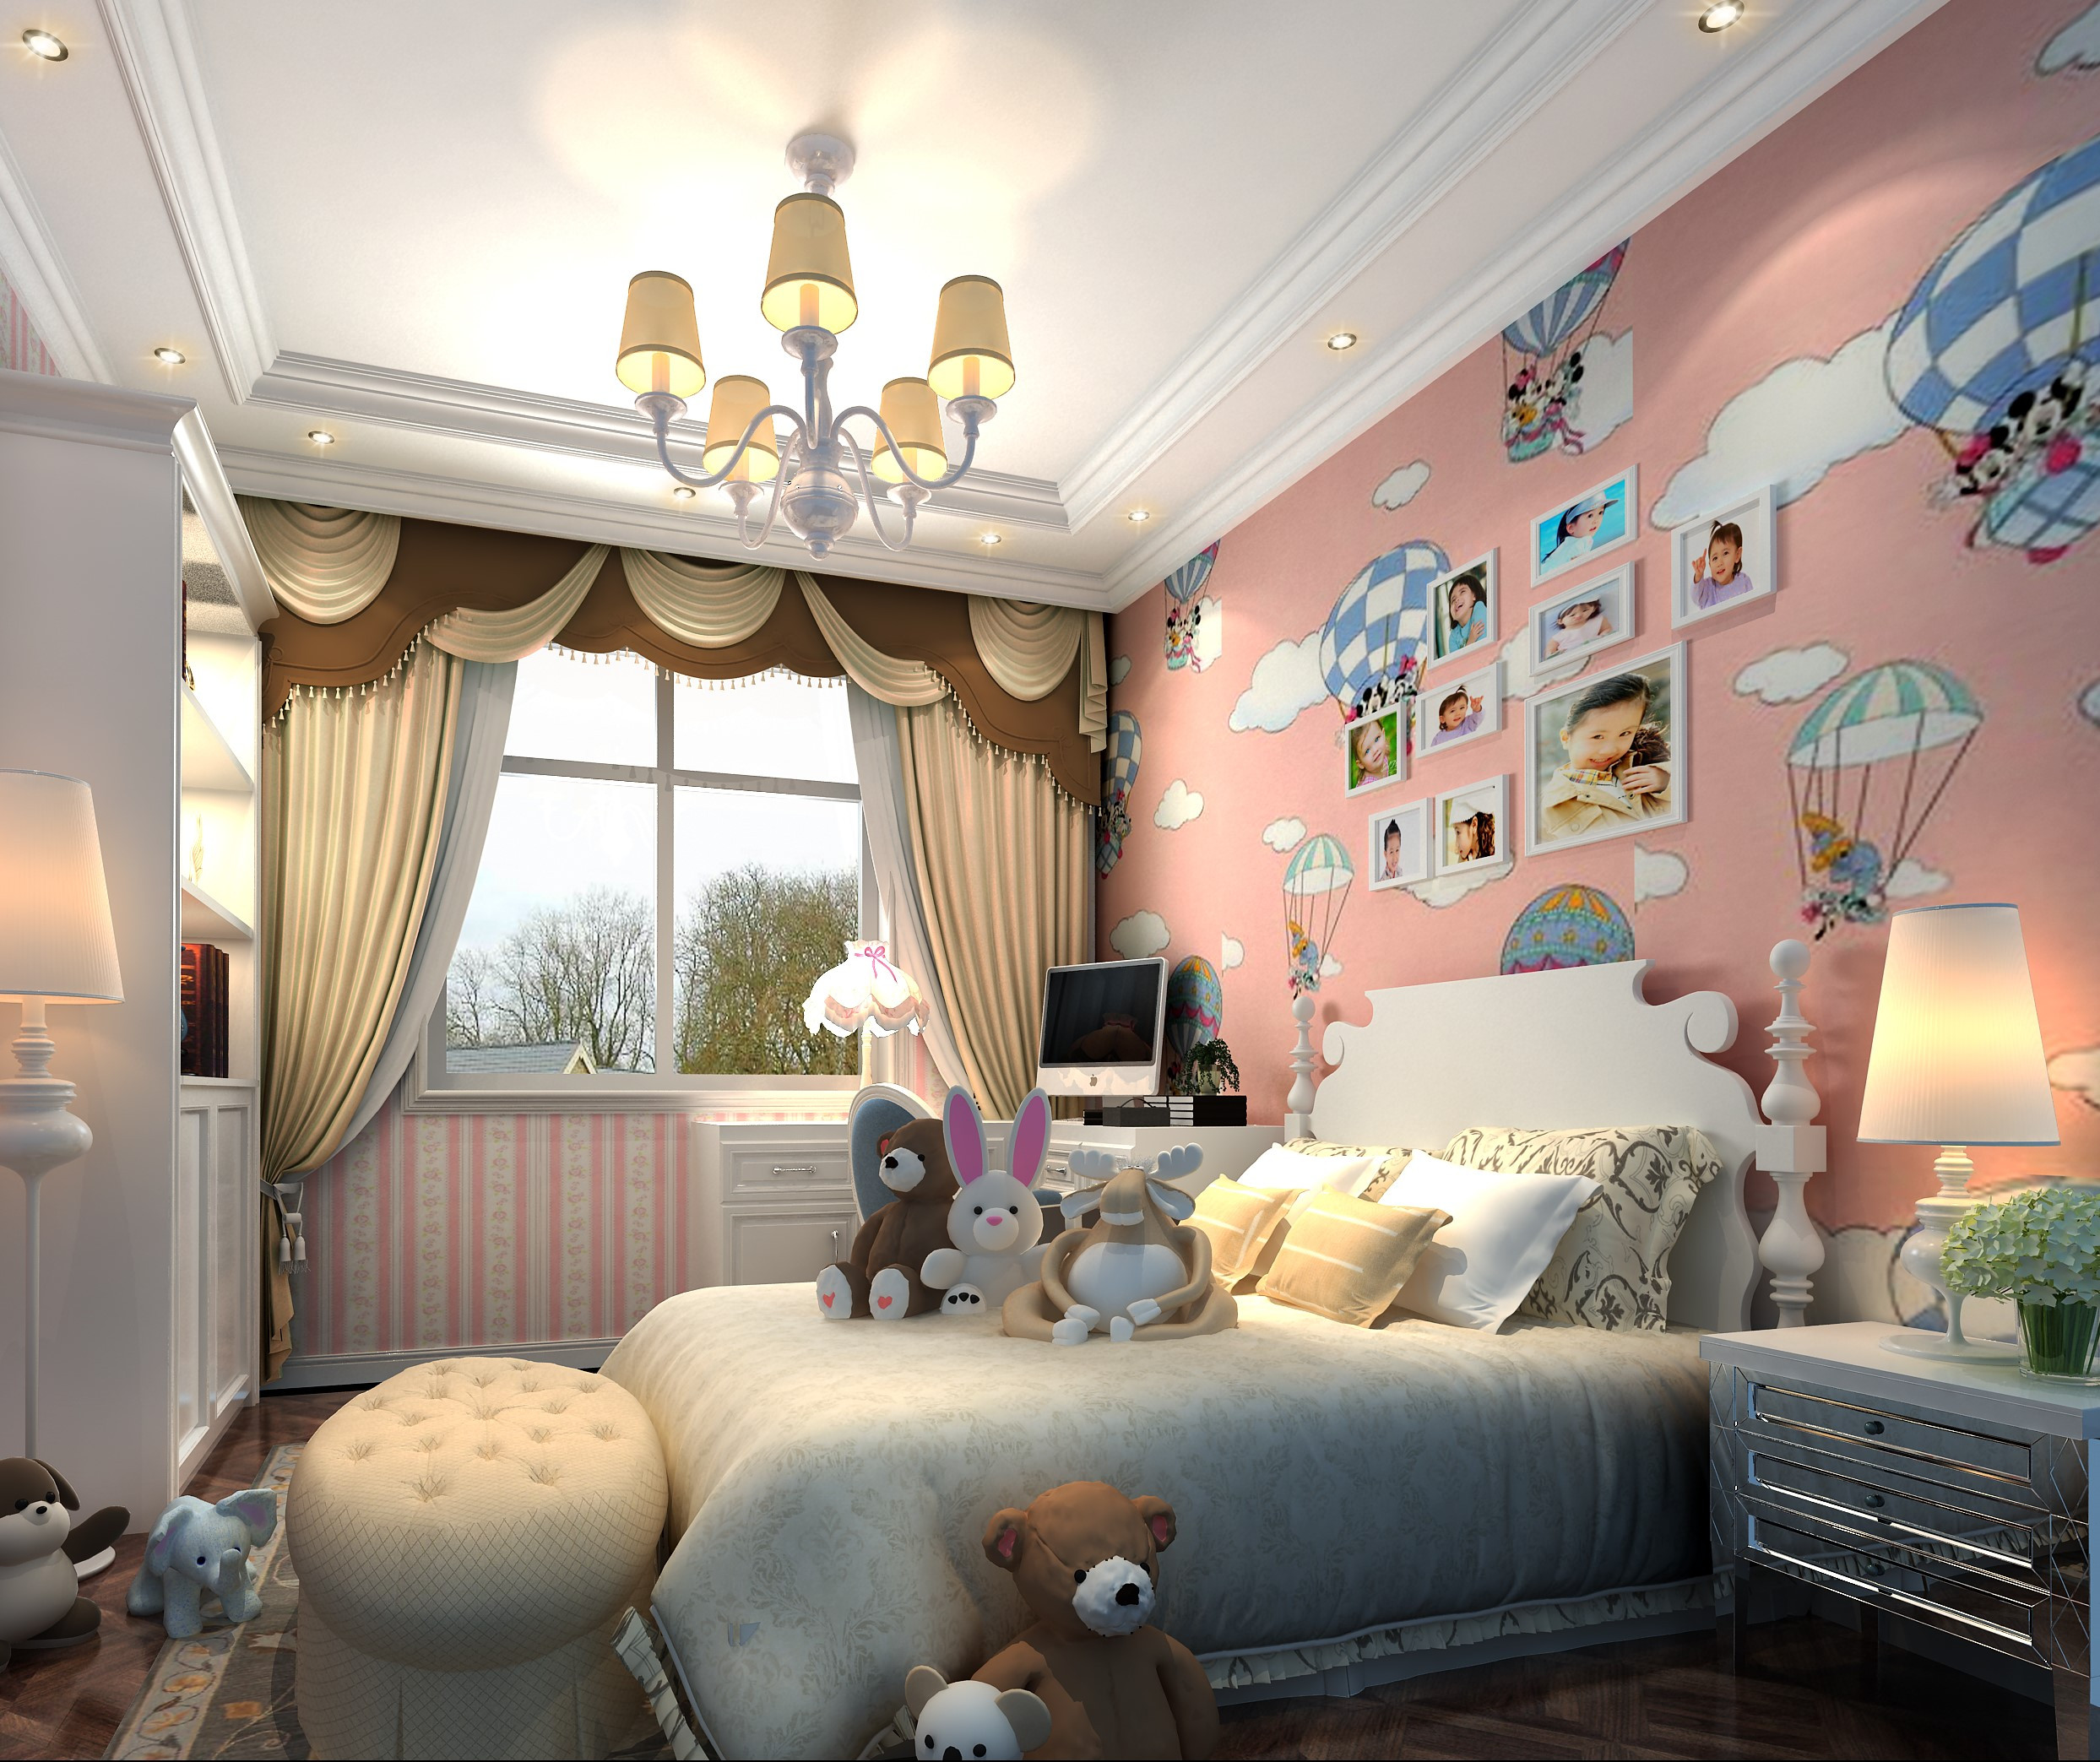 别墅装修,豪华型装修,140平米以上装修,儿童房,照片墙,欧式风格,粉色